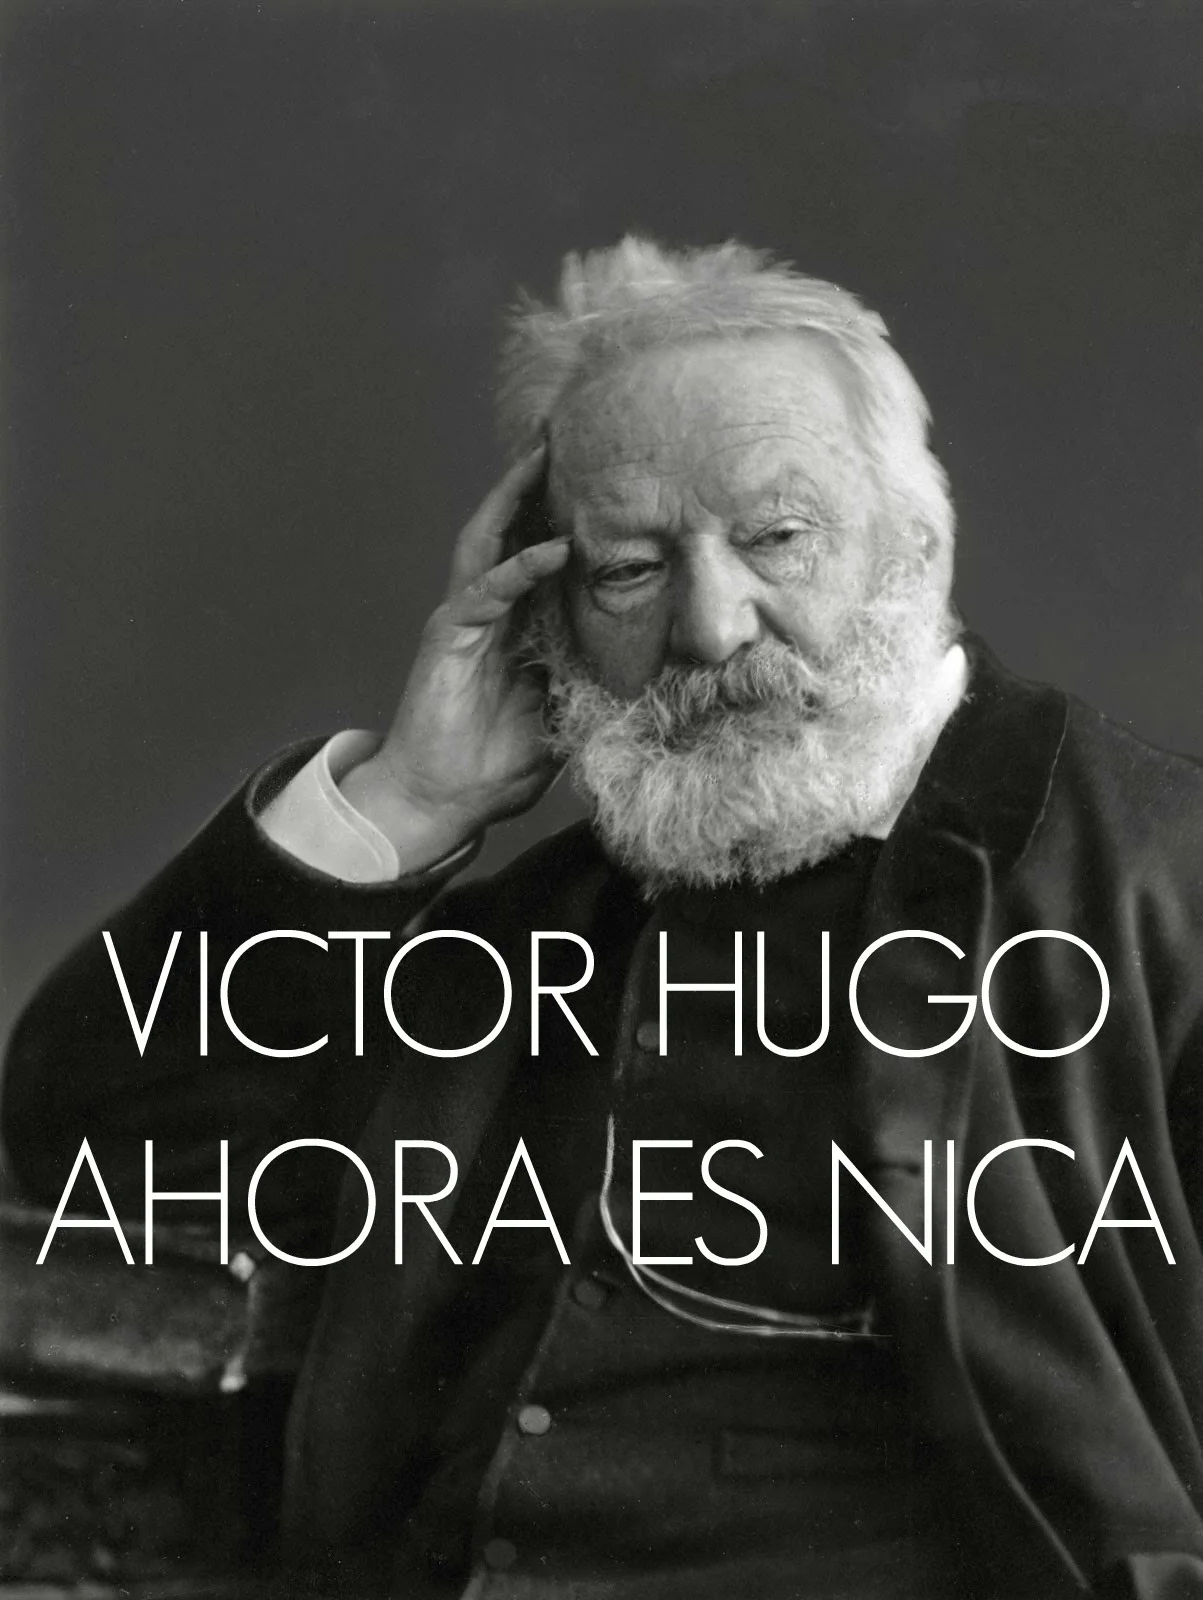 Victor Hugo ahora es nica. Gracias gobierno de Venezuela!